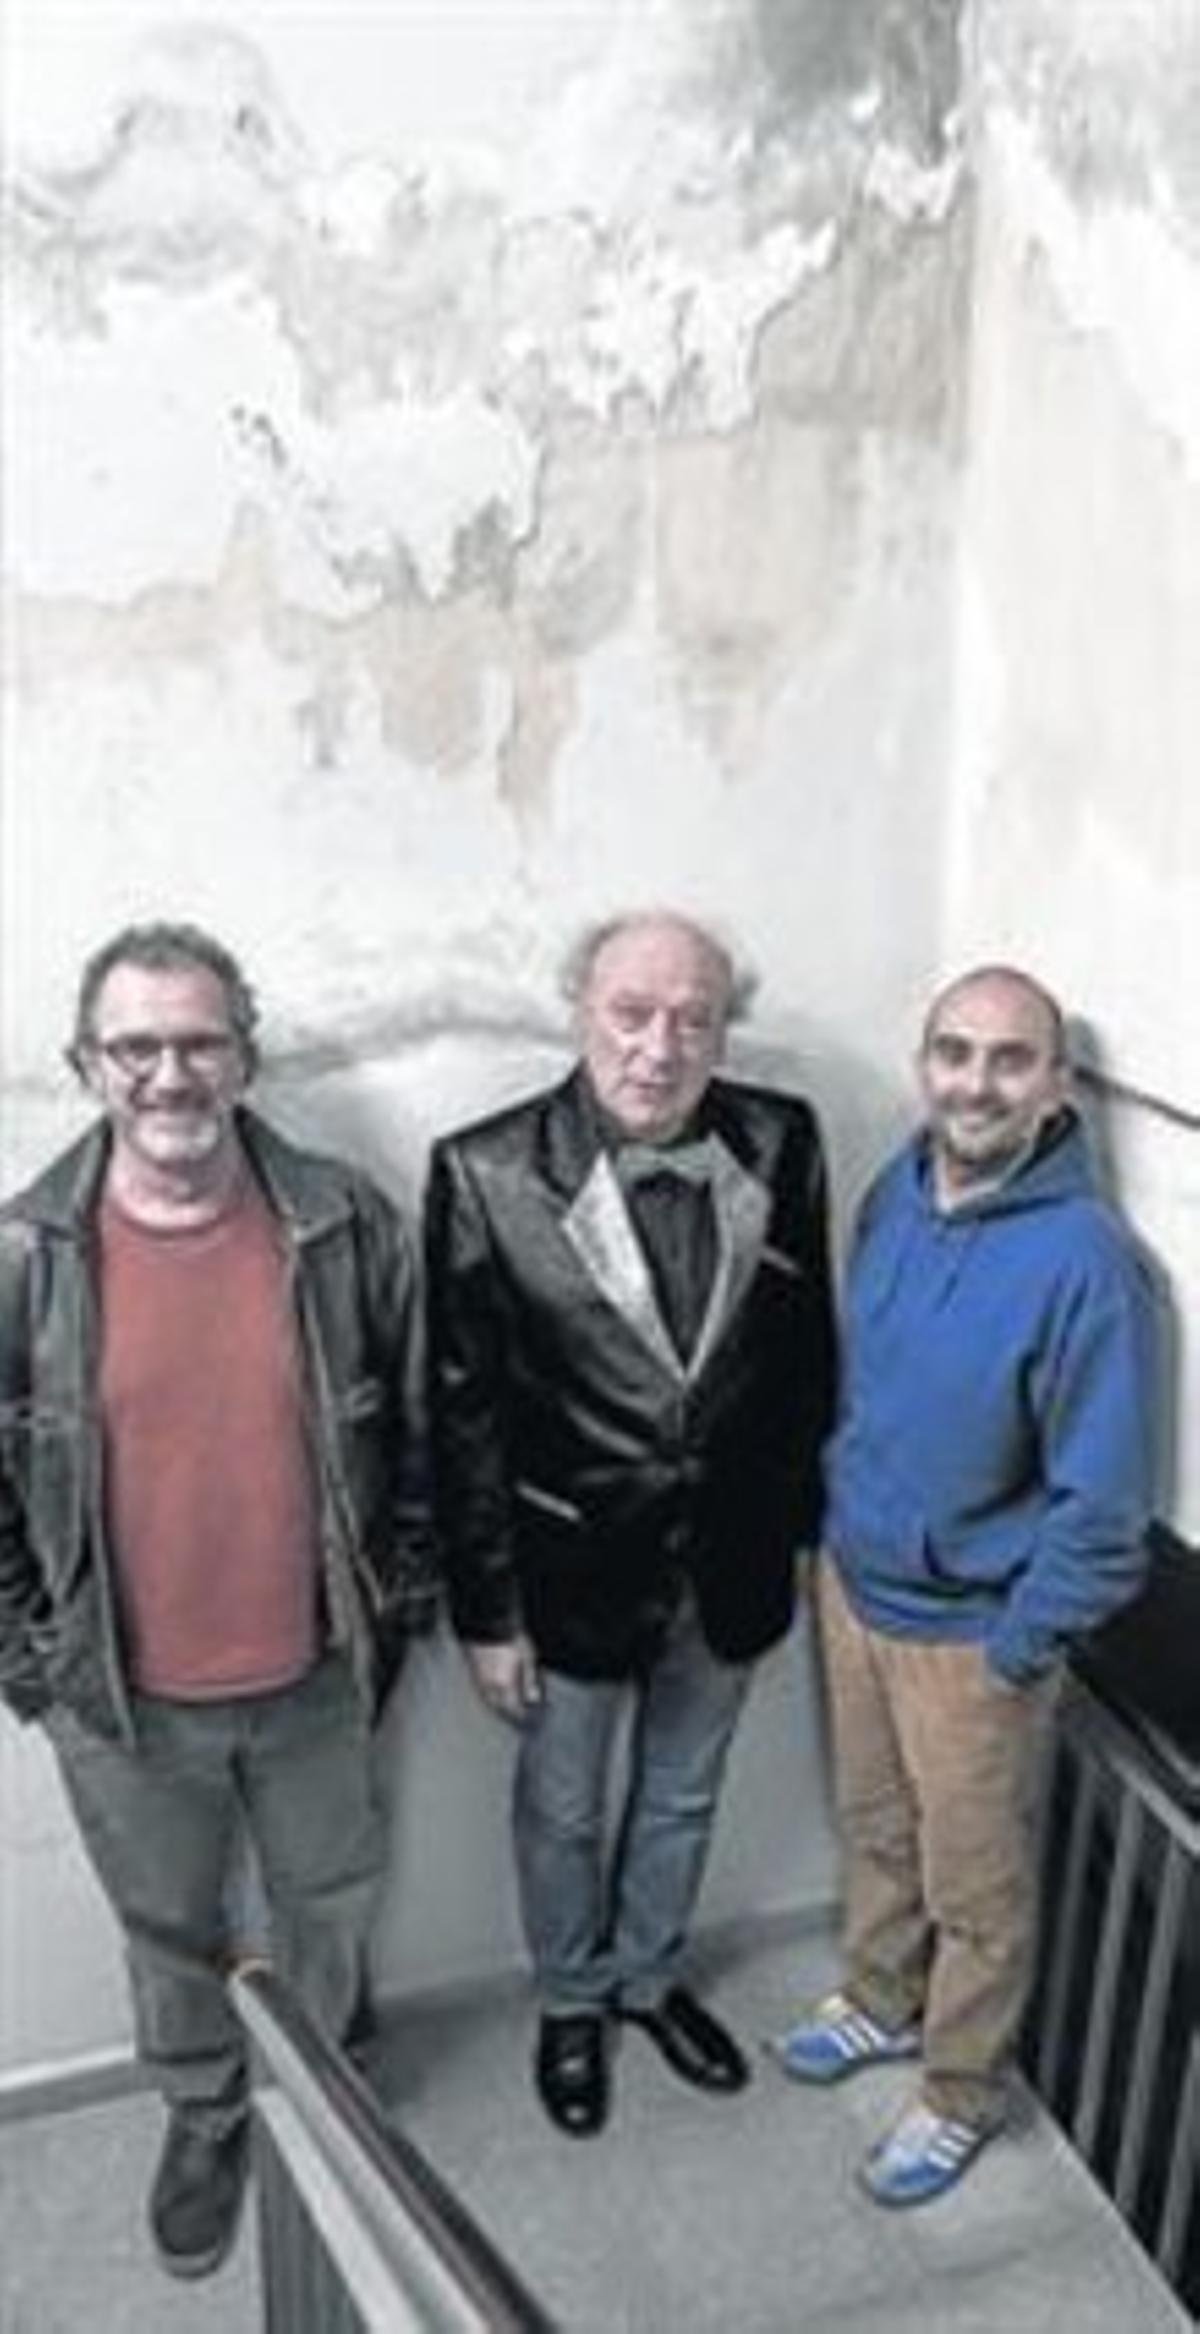 Quimi Portet, Jaume Sisa i Joan Miquel Oliver, fotografiats a Vilafranca del Penedès.